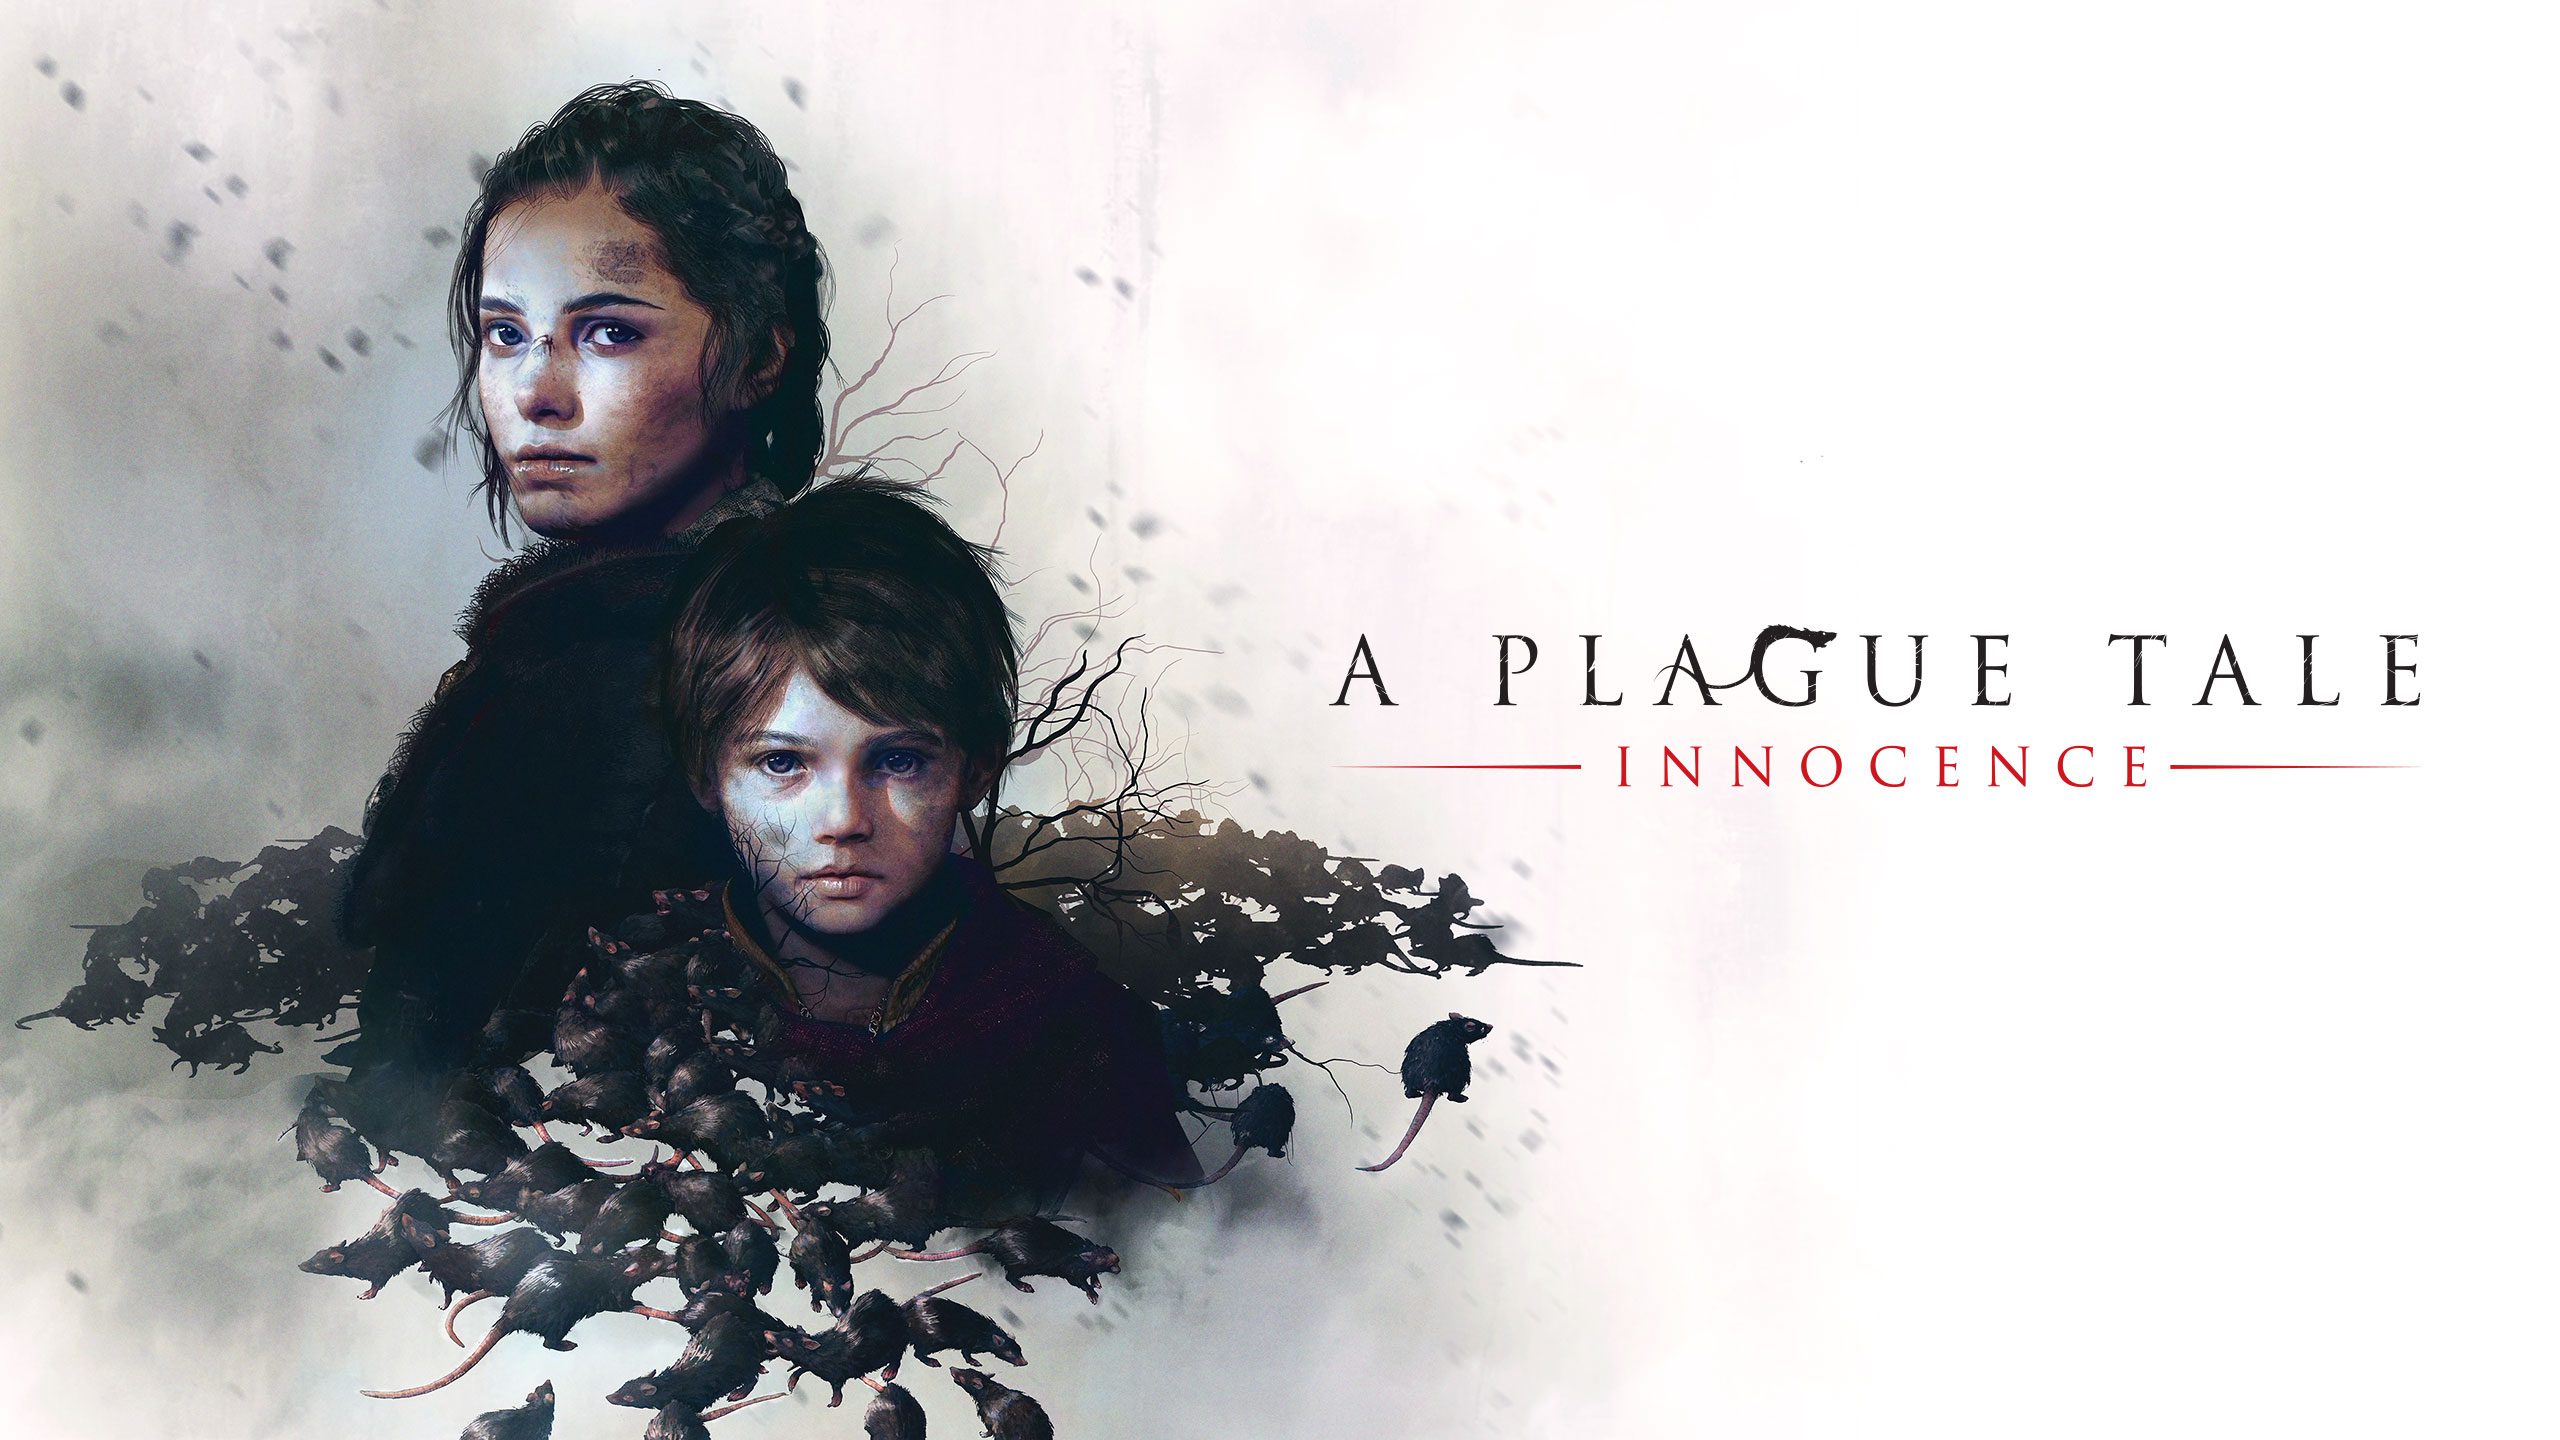 A Plague Tale: Requiem ganha novo trailer emocionante - Canaltech